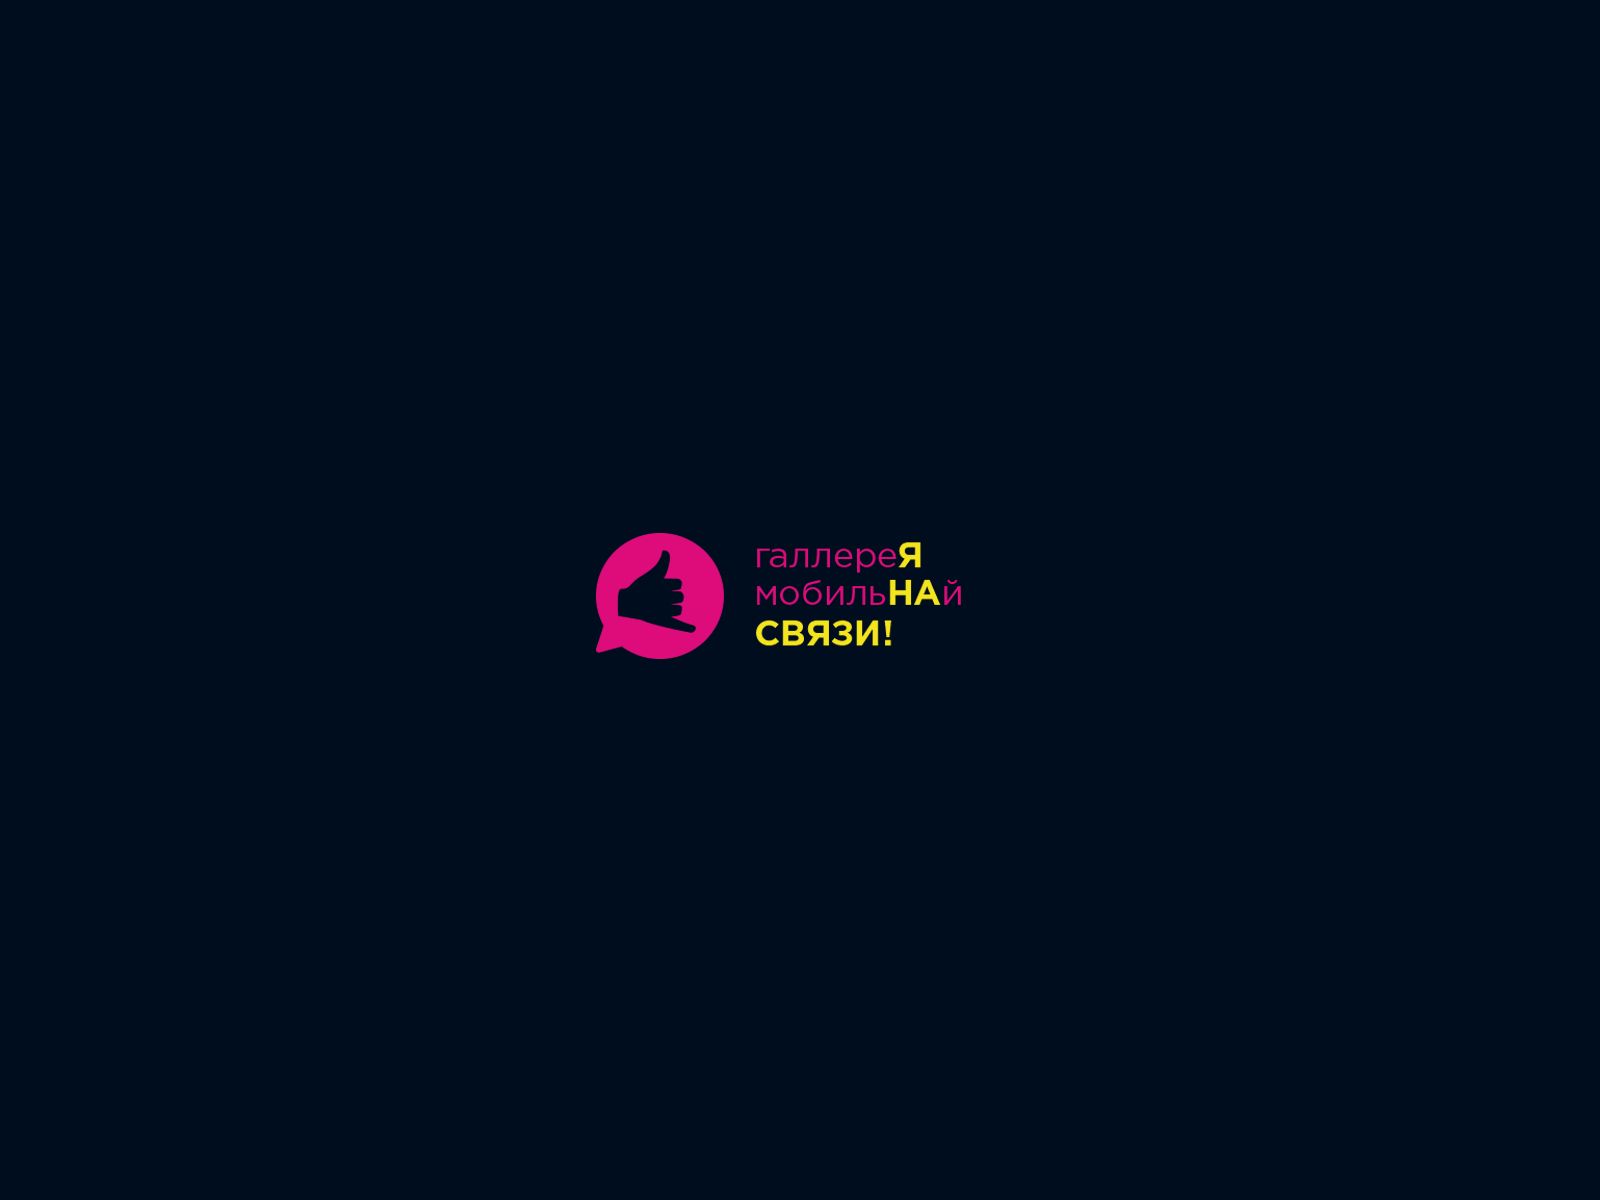 Лого и фирменный стиль для ГаллереЯ МобильНАй СВЯЗИ - дизайнер U4po4mak